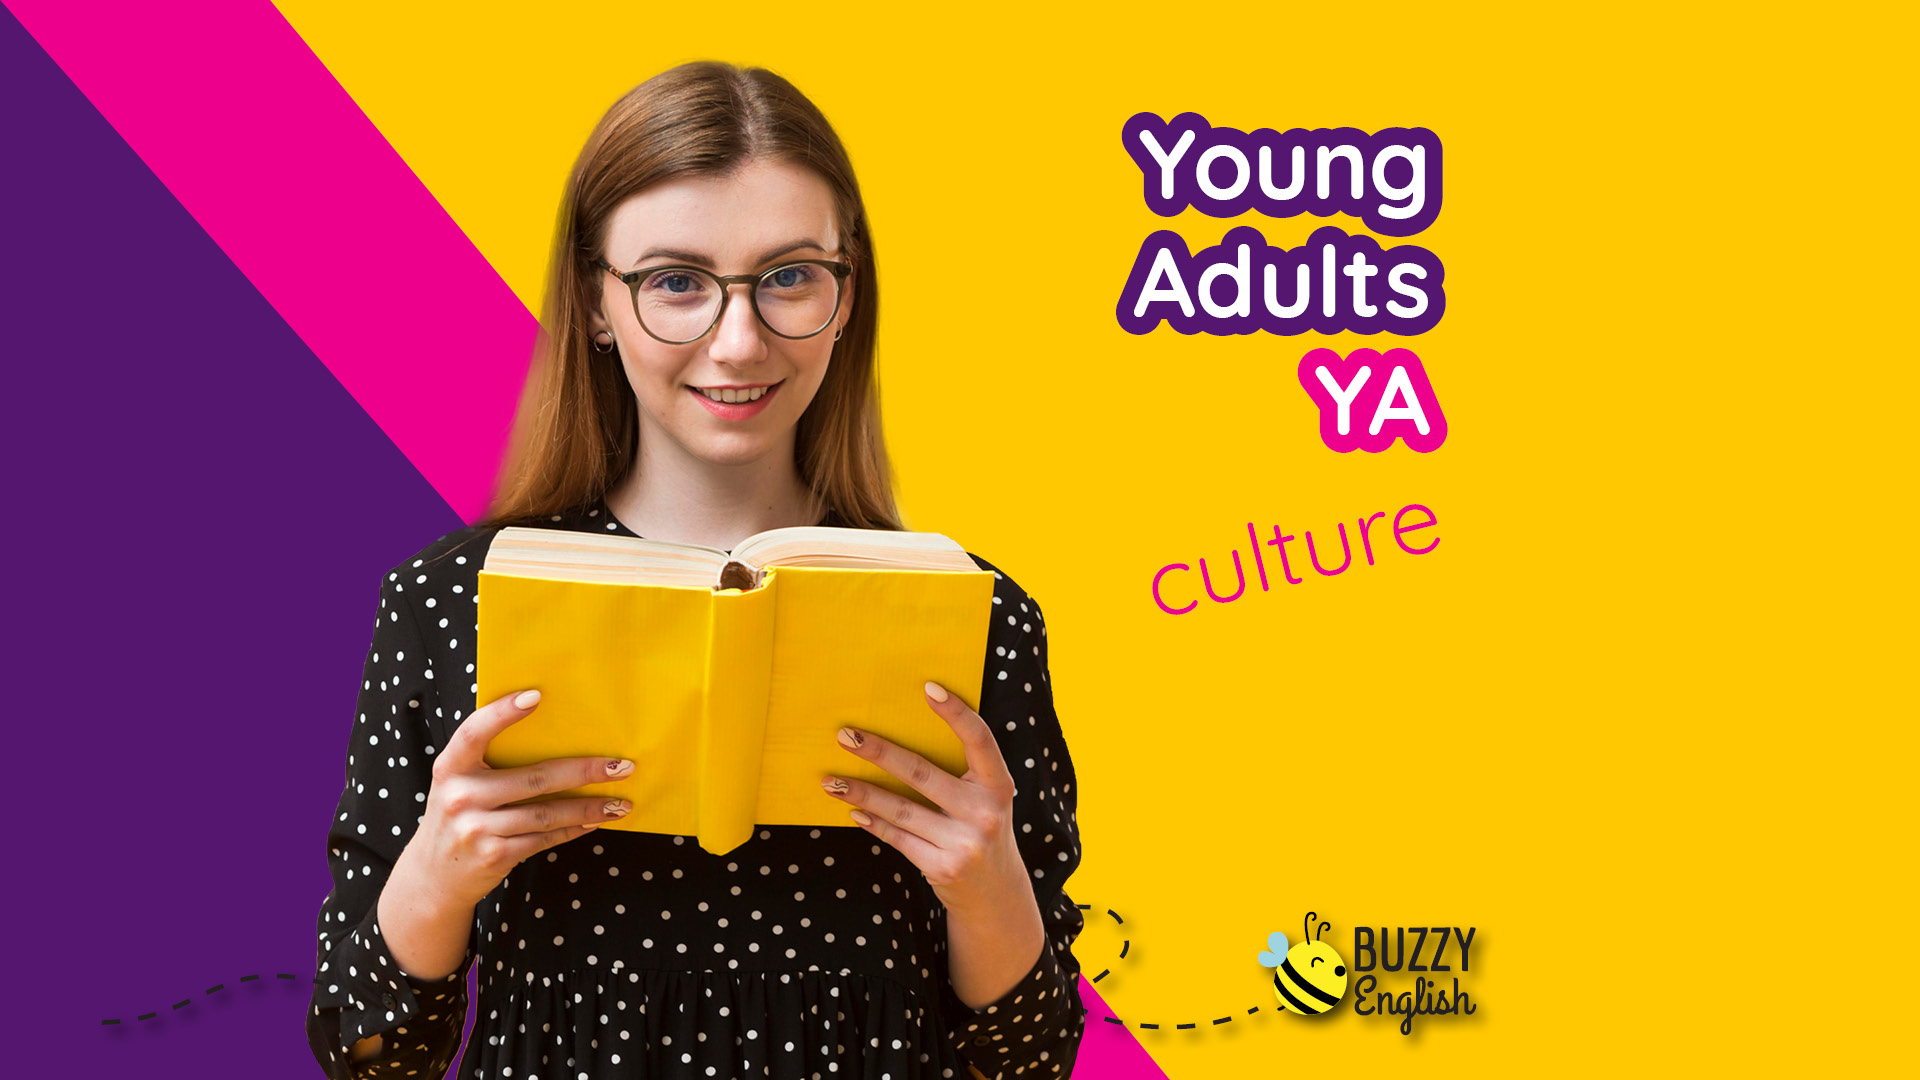 Young Adult, abbreviato con l'acronimo YA,  un genere letterario che tratta temi affini a un pubblico adolescenziale e di giovani adulti, presto diventato un fenomeno culturale dai molteplici risvolti anche sociali